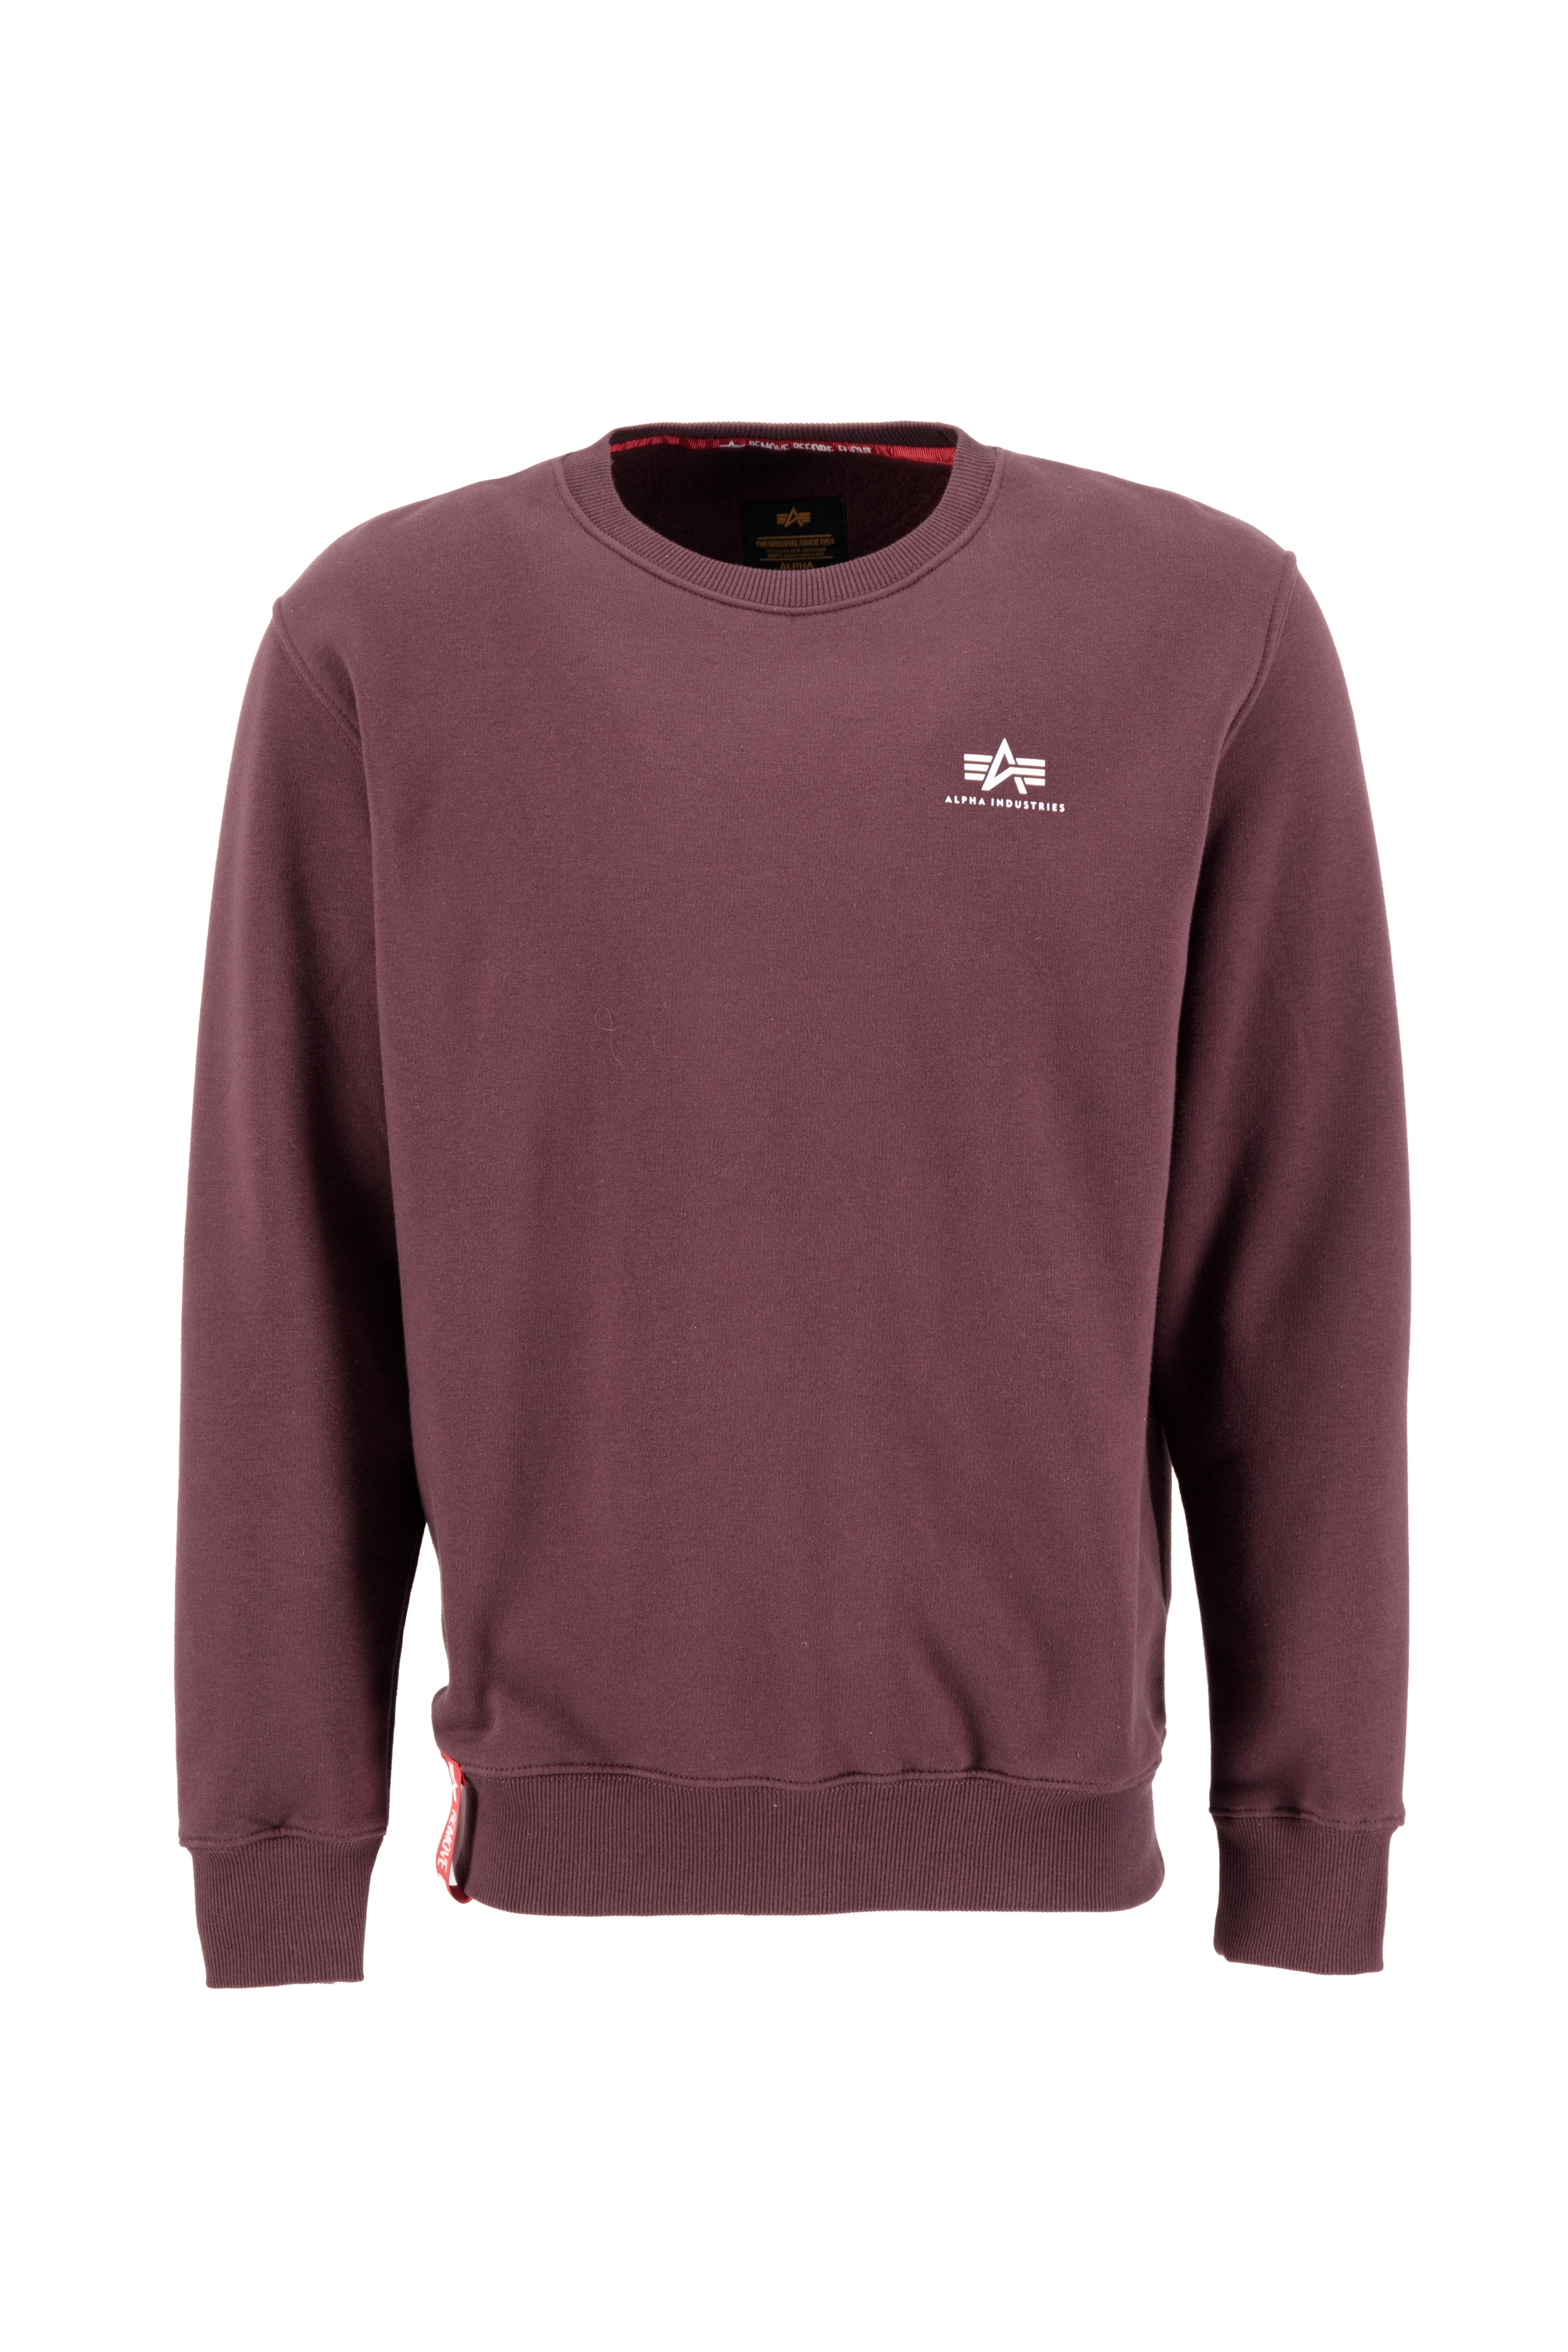 »Alpha Small Sweater Logo« kaufen Men Sweatshirts Industries bei Alpha Basic Sweater online Industries OTTO -